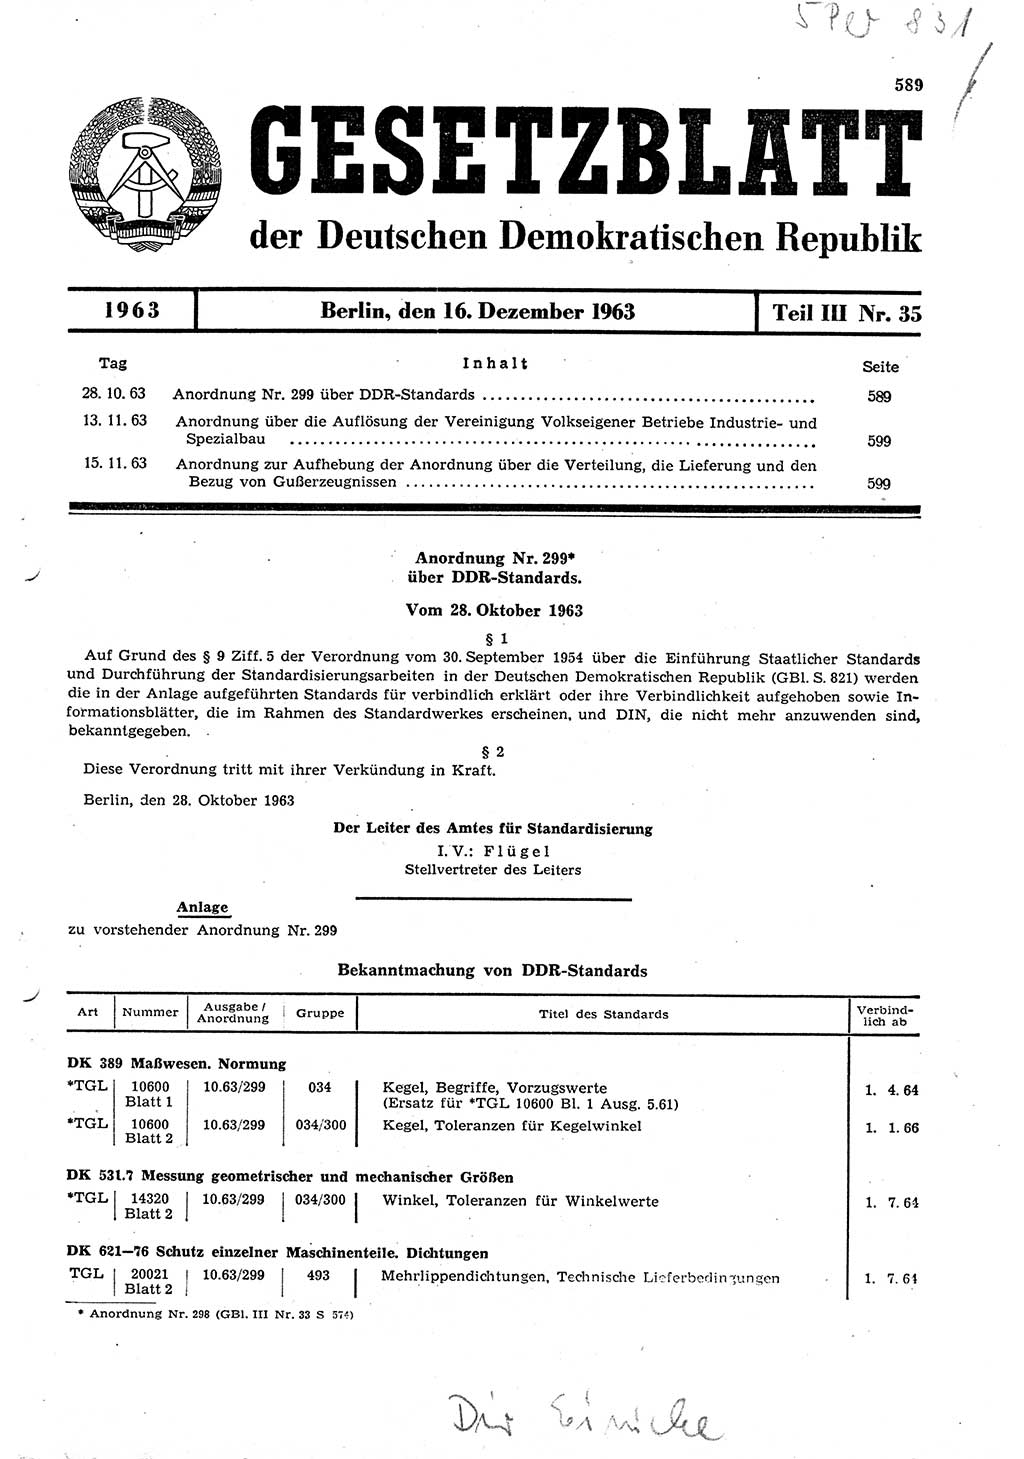 Gesetzblatt (GBl.) der Deutschen Demokratischen Republik (DDR) Teil ⅠⅠⅠ 1963, Seite 589 (GBl. DDR ⅠⅠⅠ 1963, S. 589)